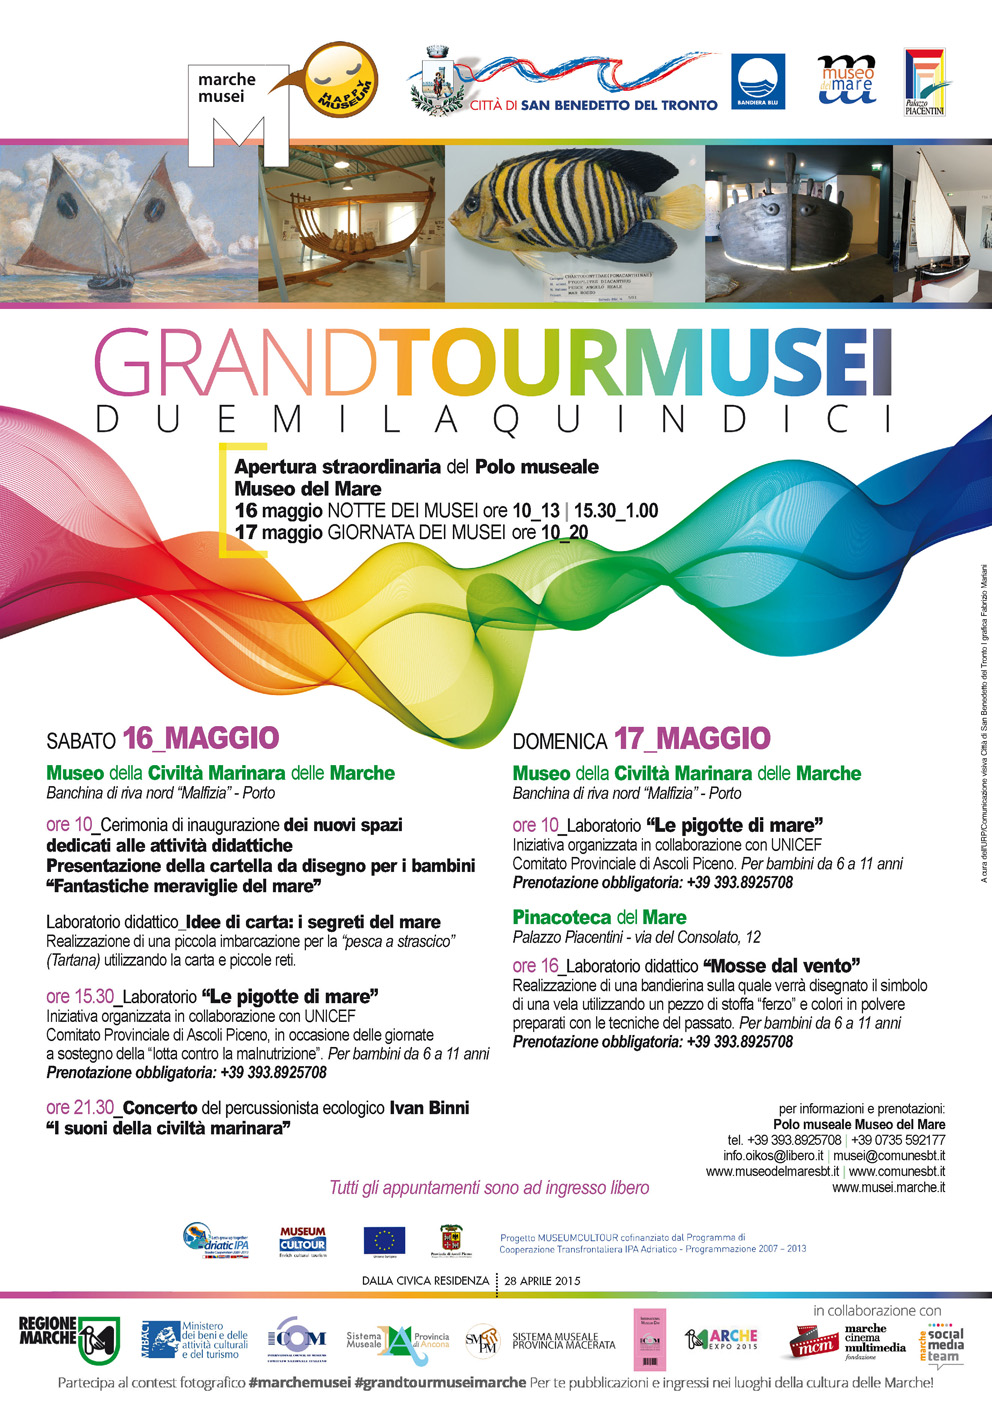 Grand tour musei 2015